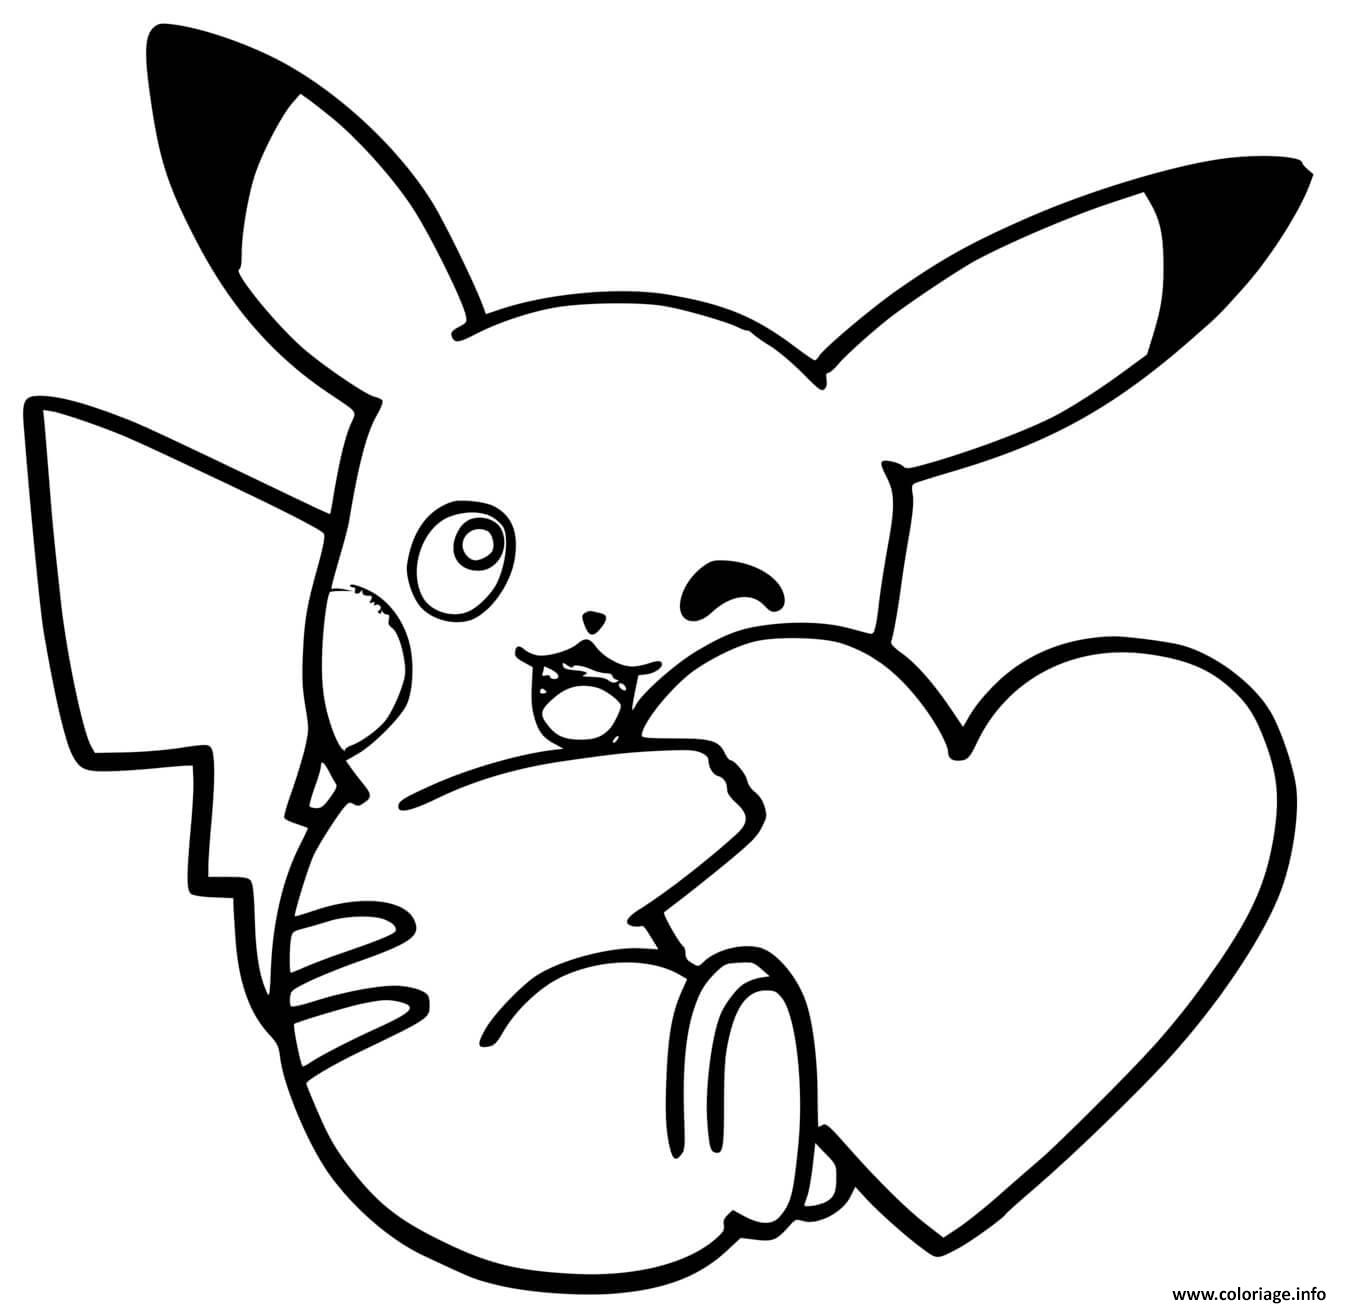 Coloriage Pikachu Mignon Avec Un Coeur Dessin Pikachu à Imprimer